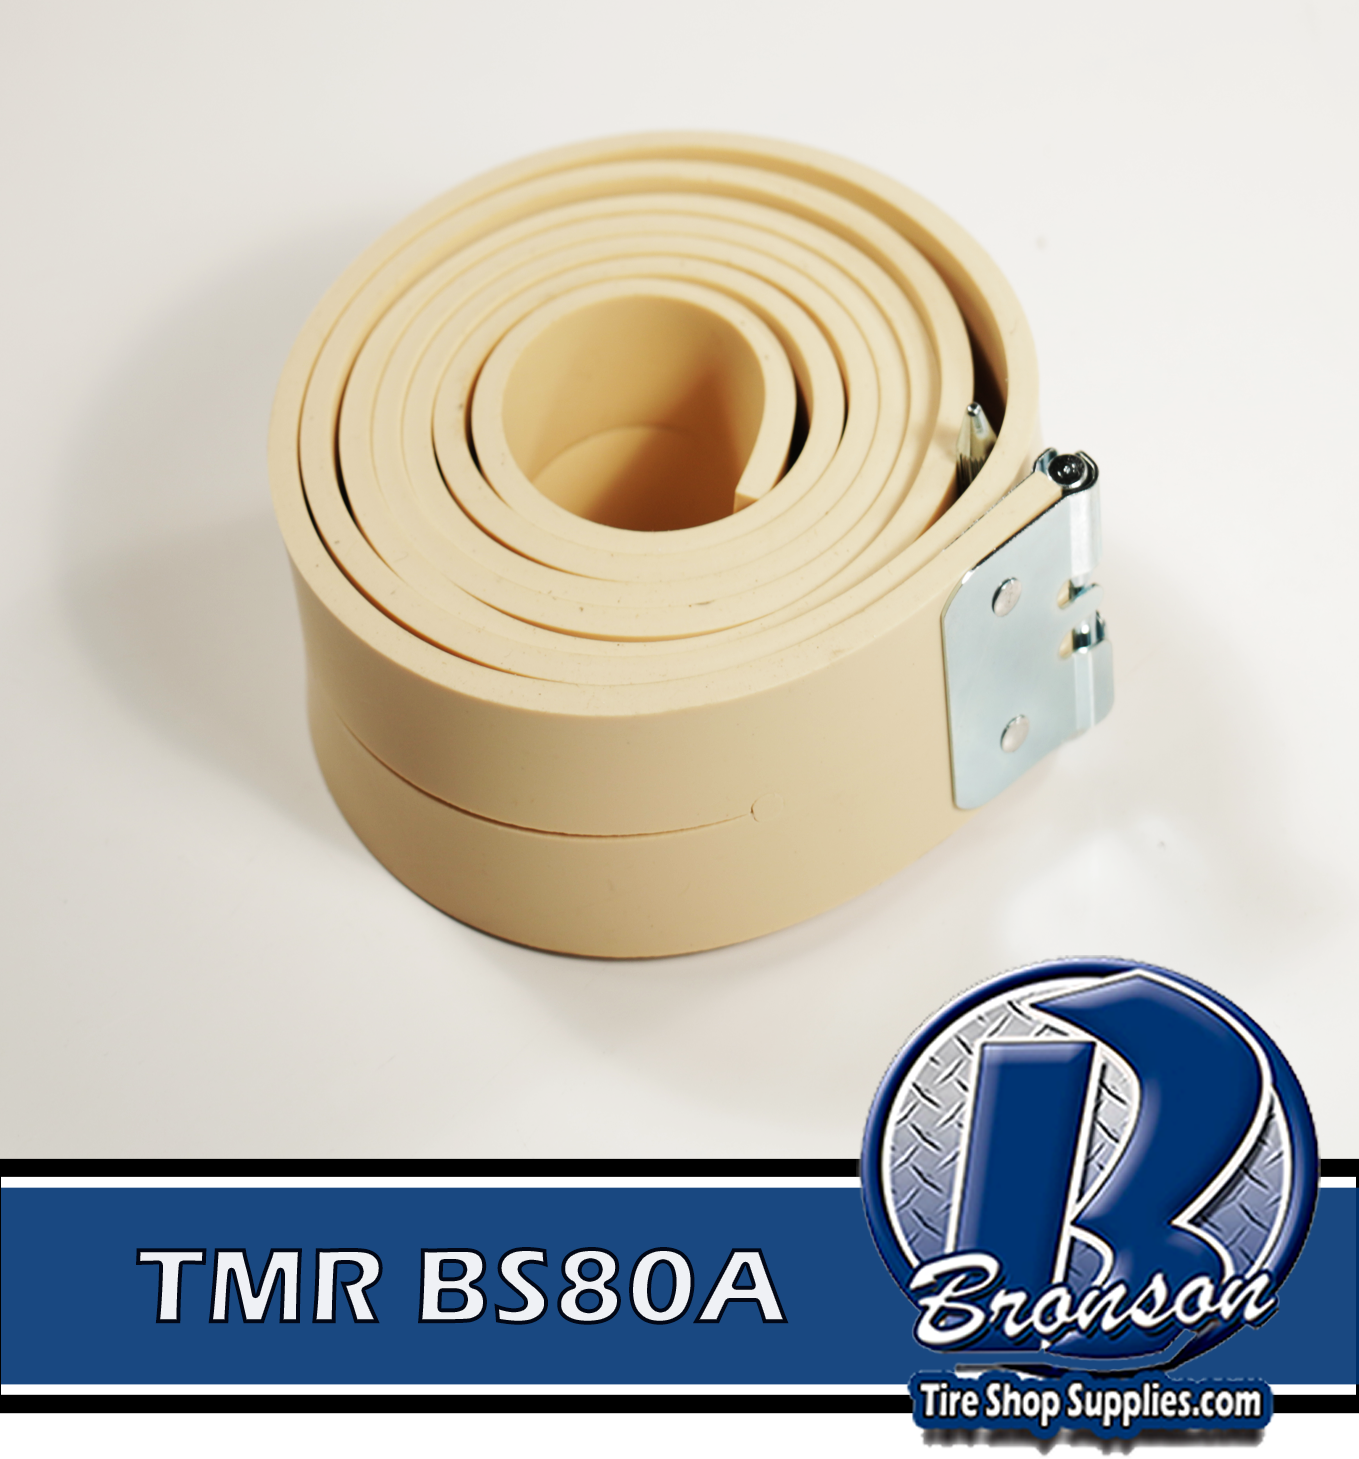 TMR BS80A Premium 1 3/4 D